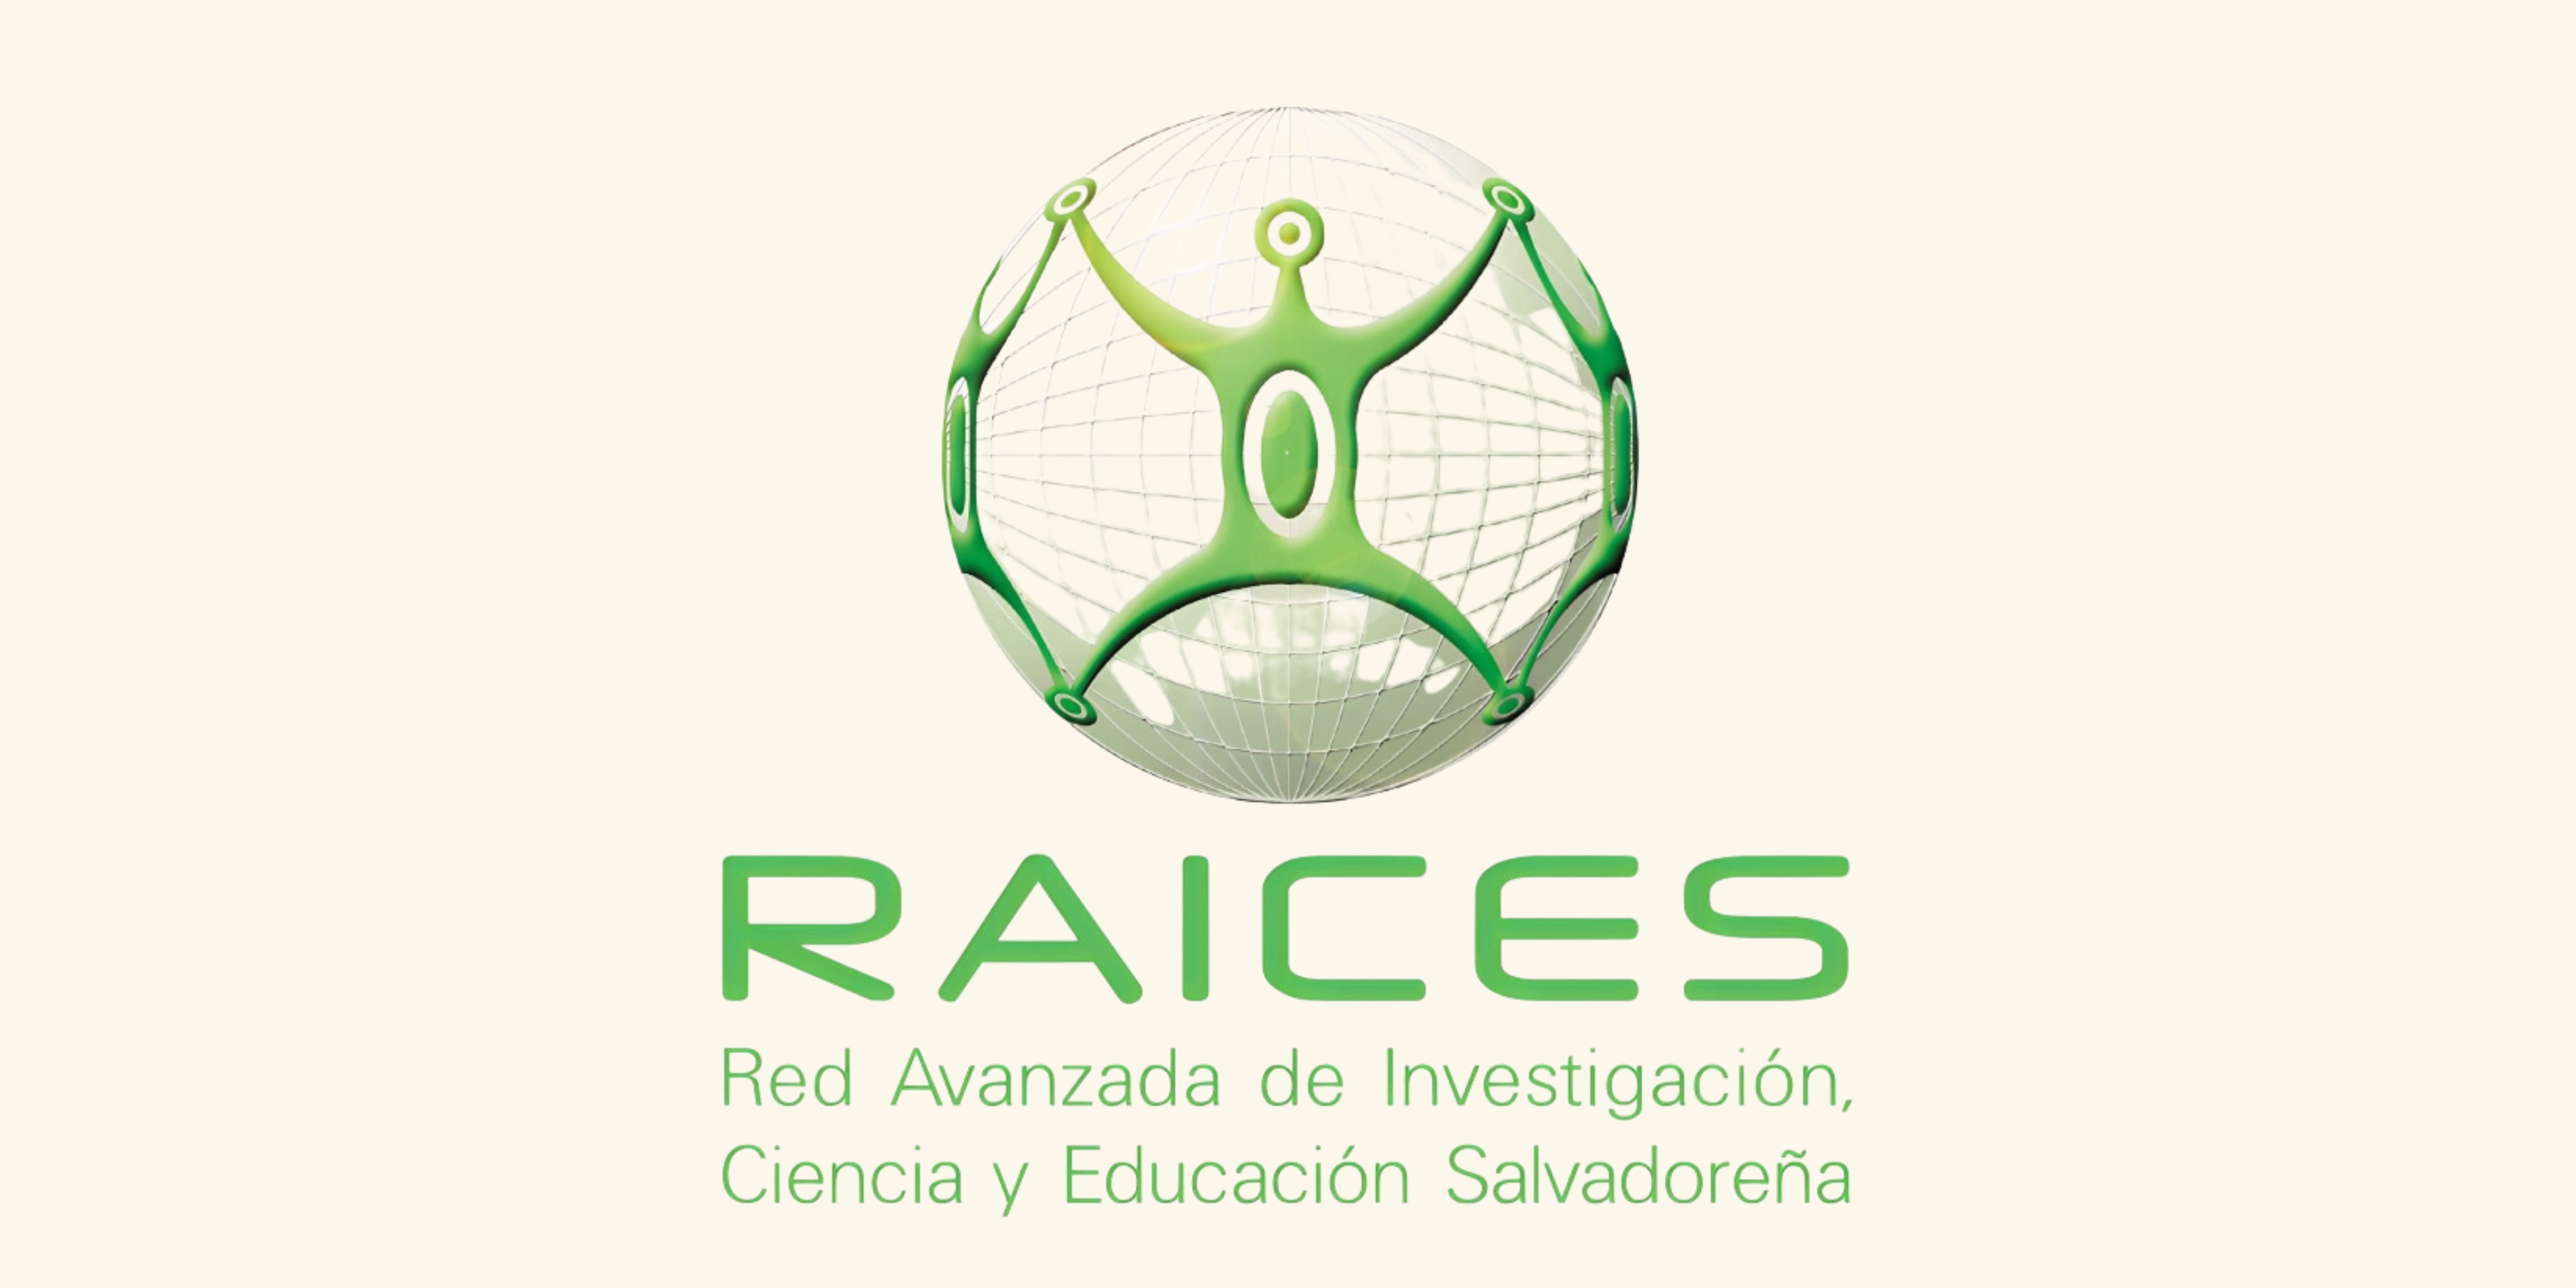 Red Avanzada de Investigación y Ciencias de Educación Salvadoreña